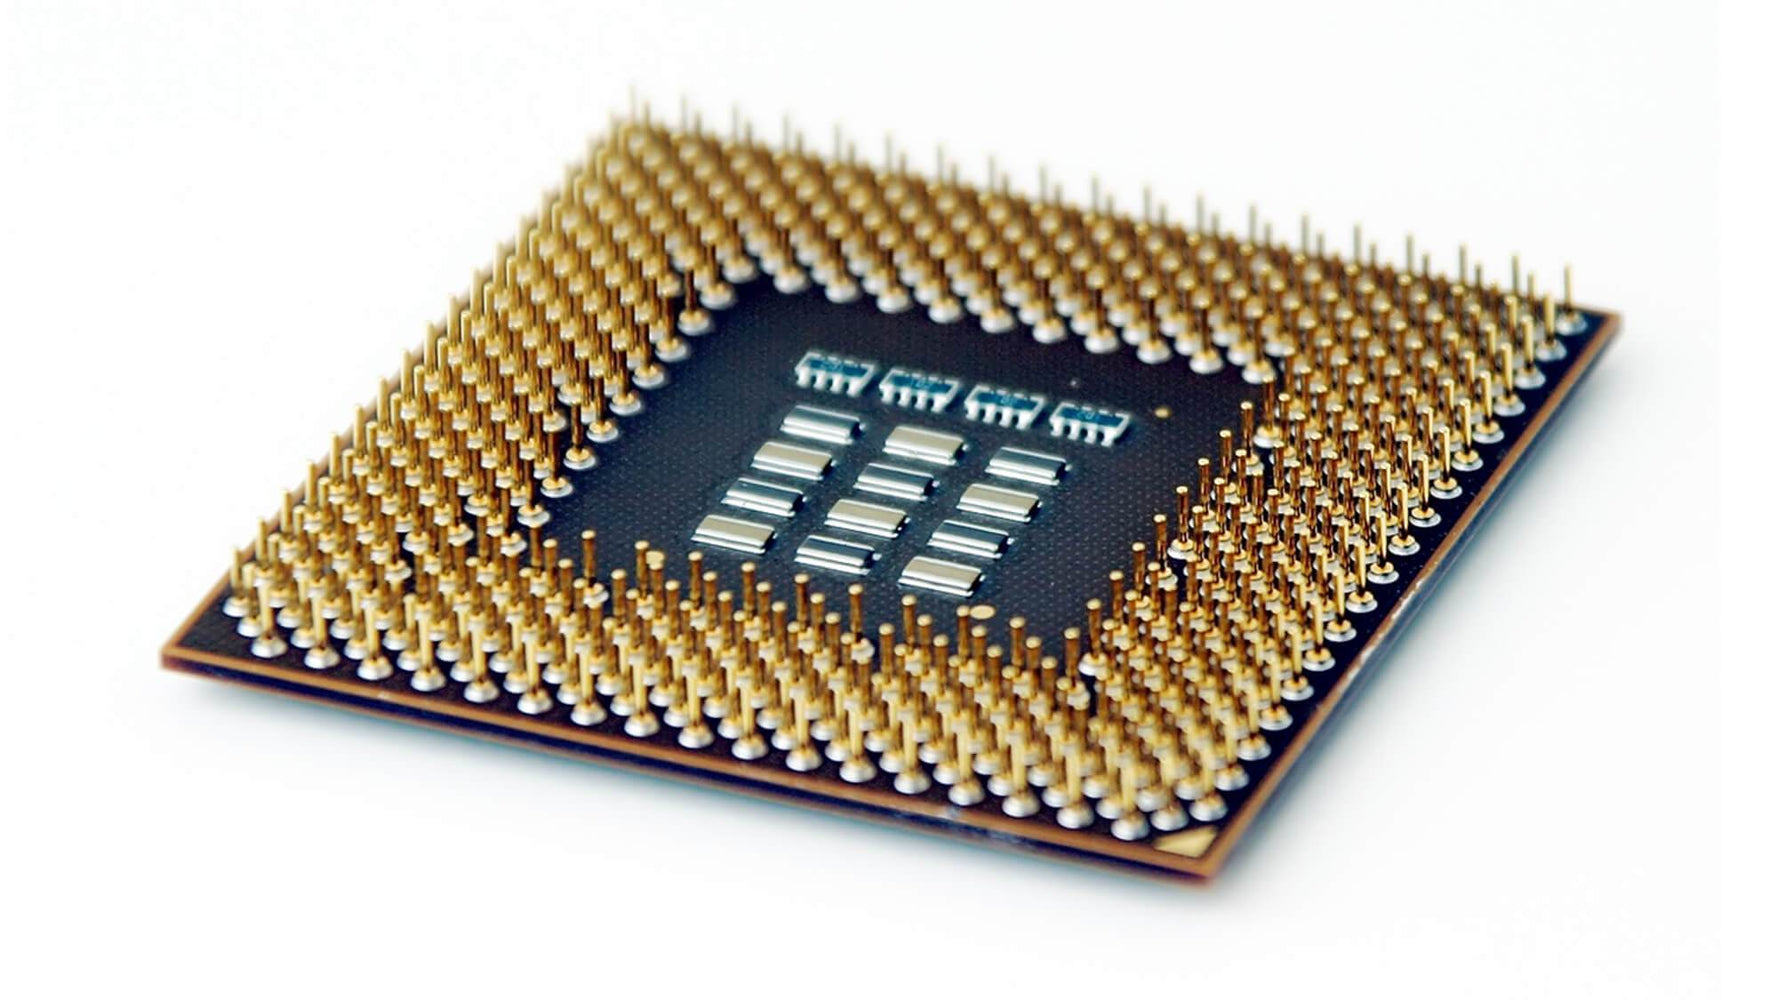 BX80623172600 - Intel Core i7-2600 4-Core 3.40GHz 5GT/s DMI 8MB L3 Cache Socket LGA1155 Processor